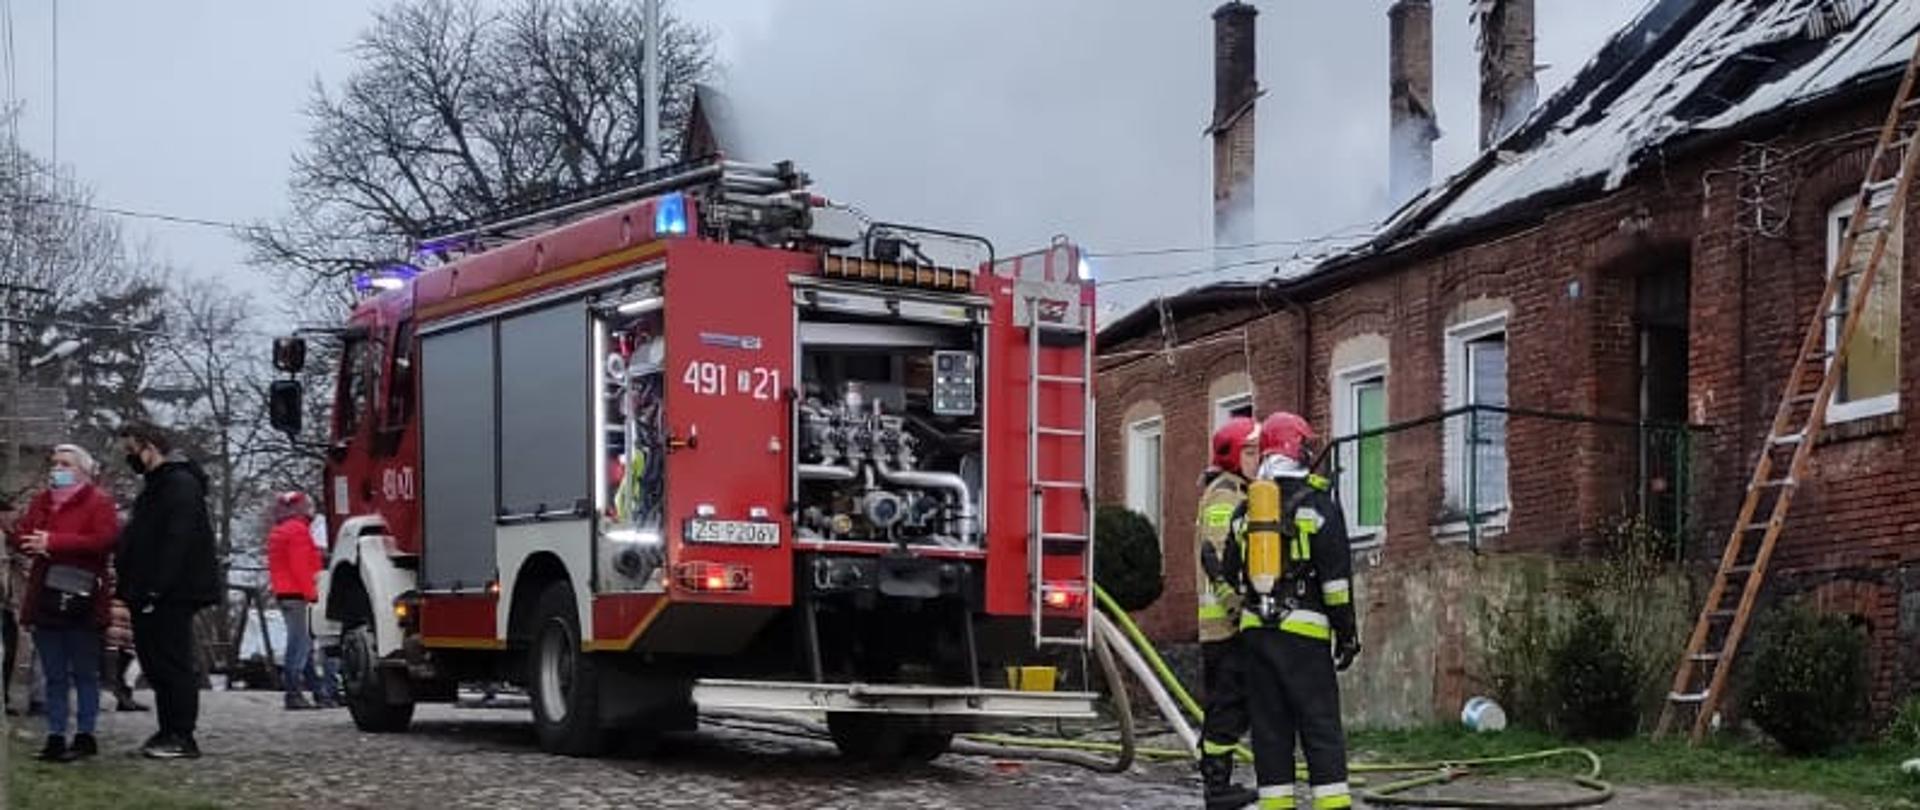 Na zdjęciu strażacy ubrani w umundurowanie bojowe i hełmy stoją obok budynku z którego wydobywa się dym. W tle pojazd pożarniczy i gapie.